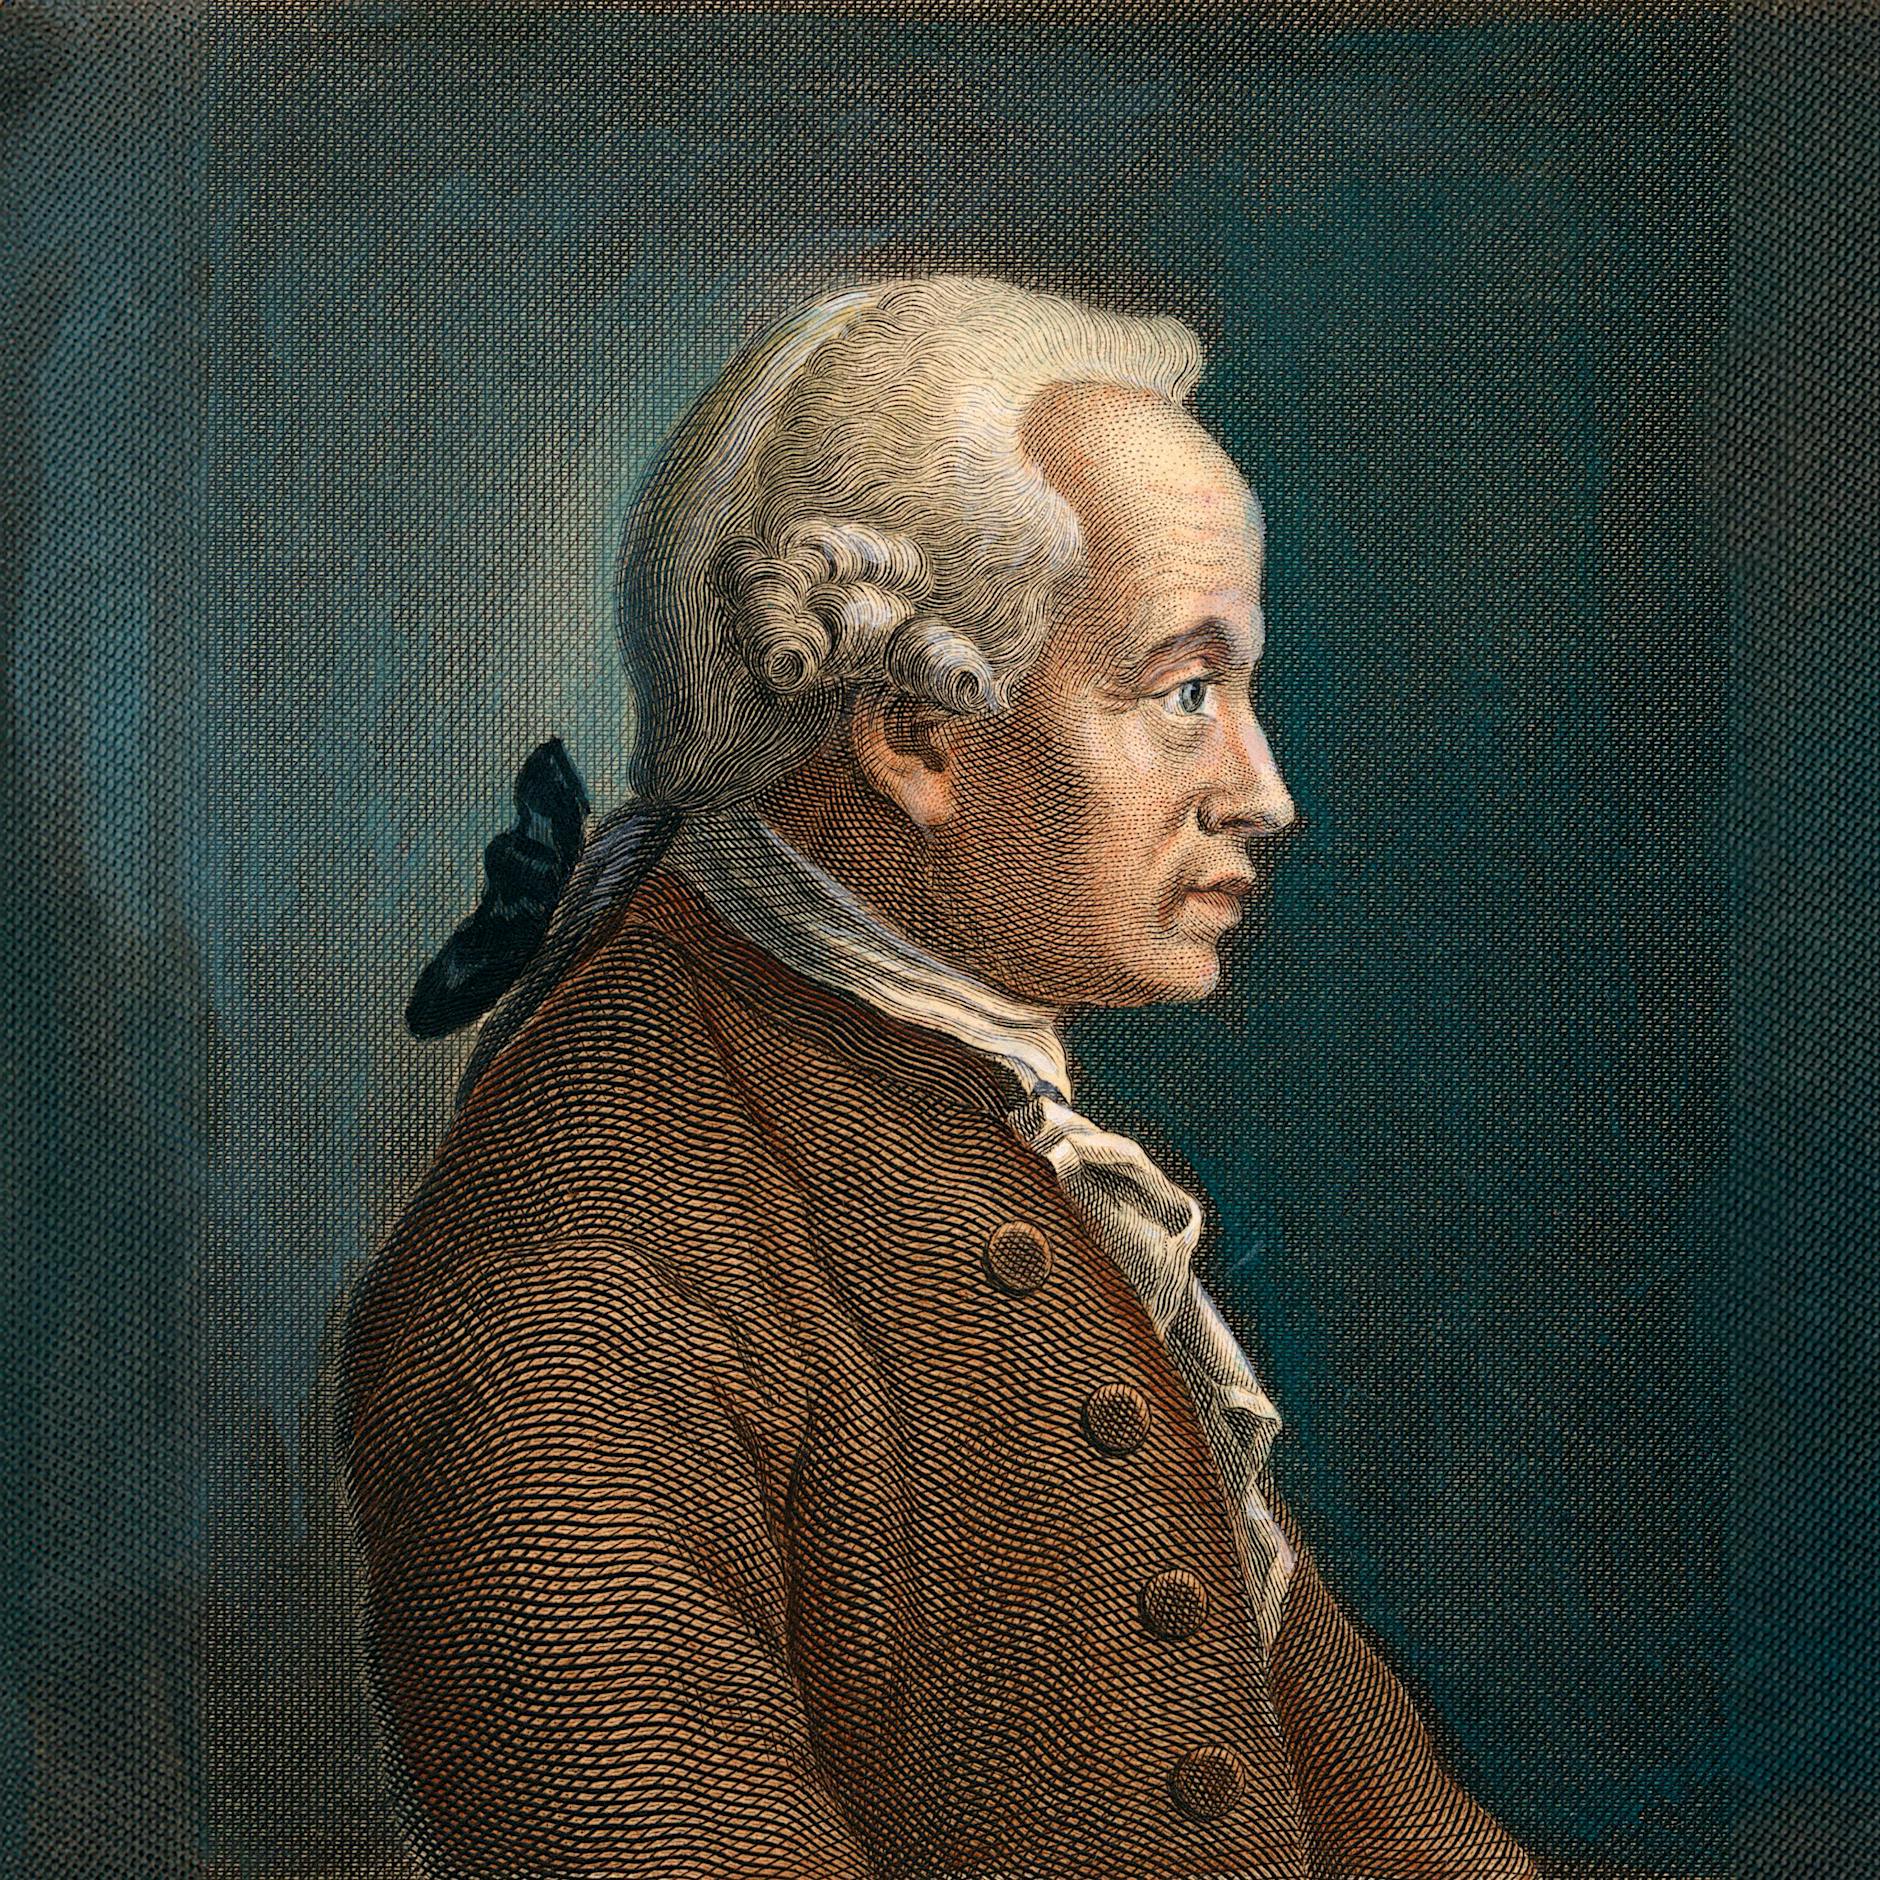 Immanuel Kant zum 300. Geburtstag: Deutsch-russischer Streit um die Deutungshoheit